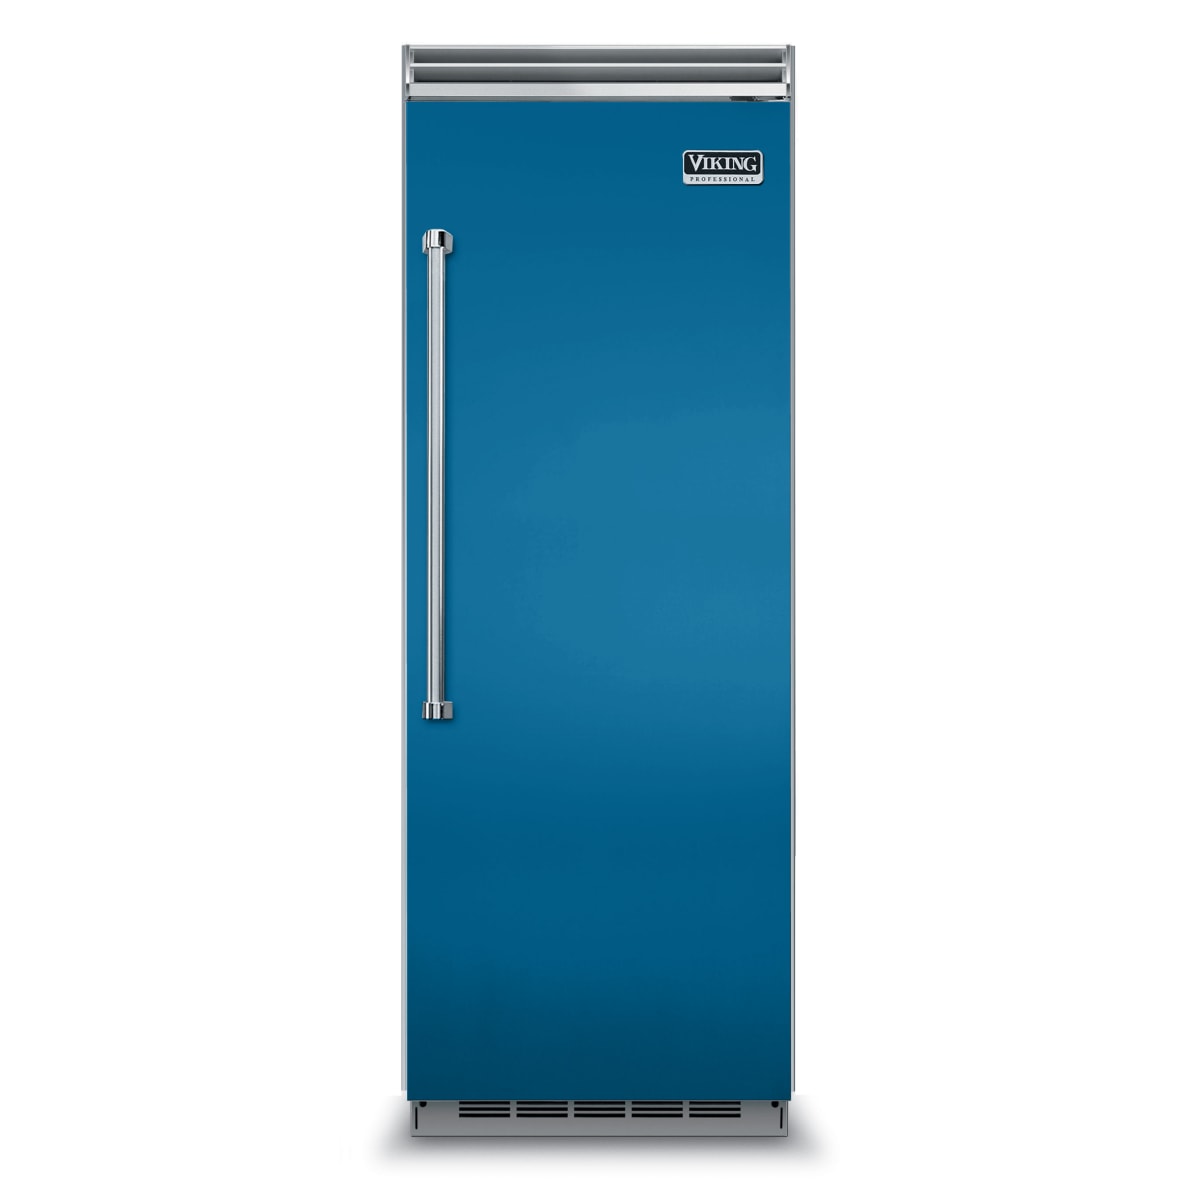 krassen Verlichting duisternis Viking Full Size Refrigerators Refrigeration Appliances - VCRB5303R